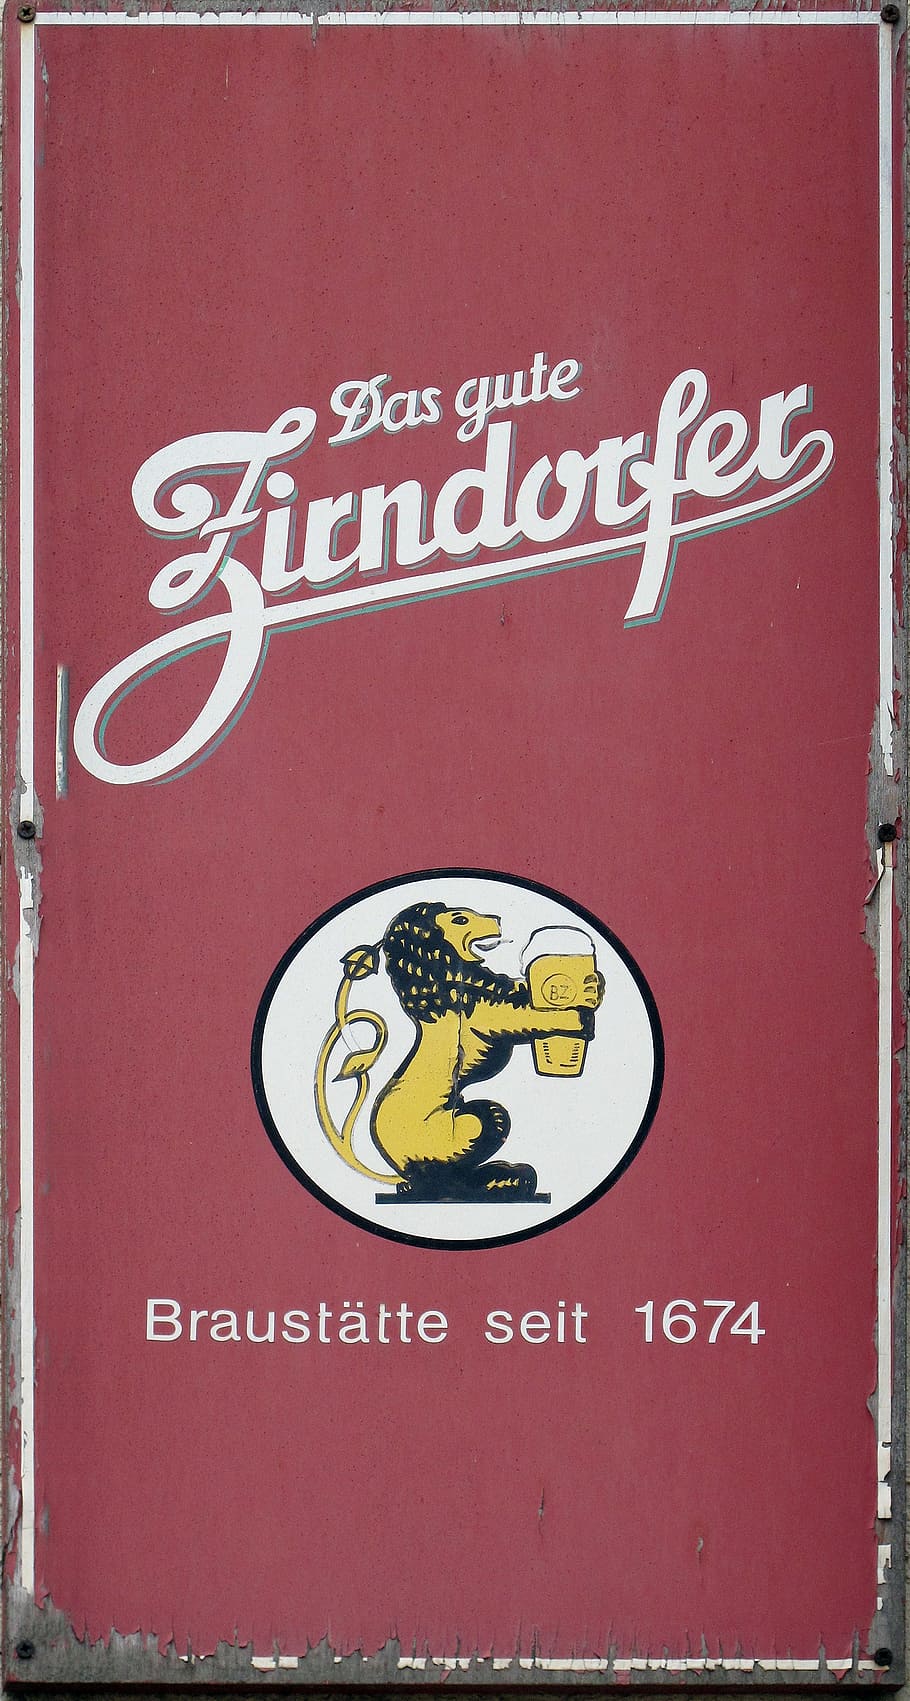 email sign, zirndorfer, beer, enamel, shield, old sign, advertising, HD wallpaper